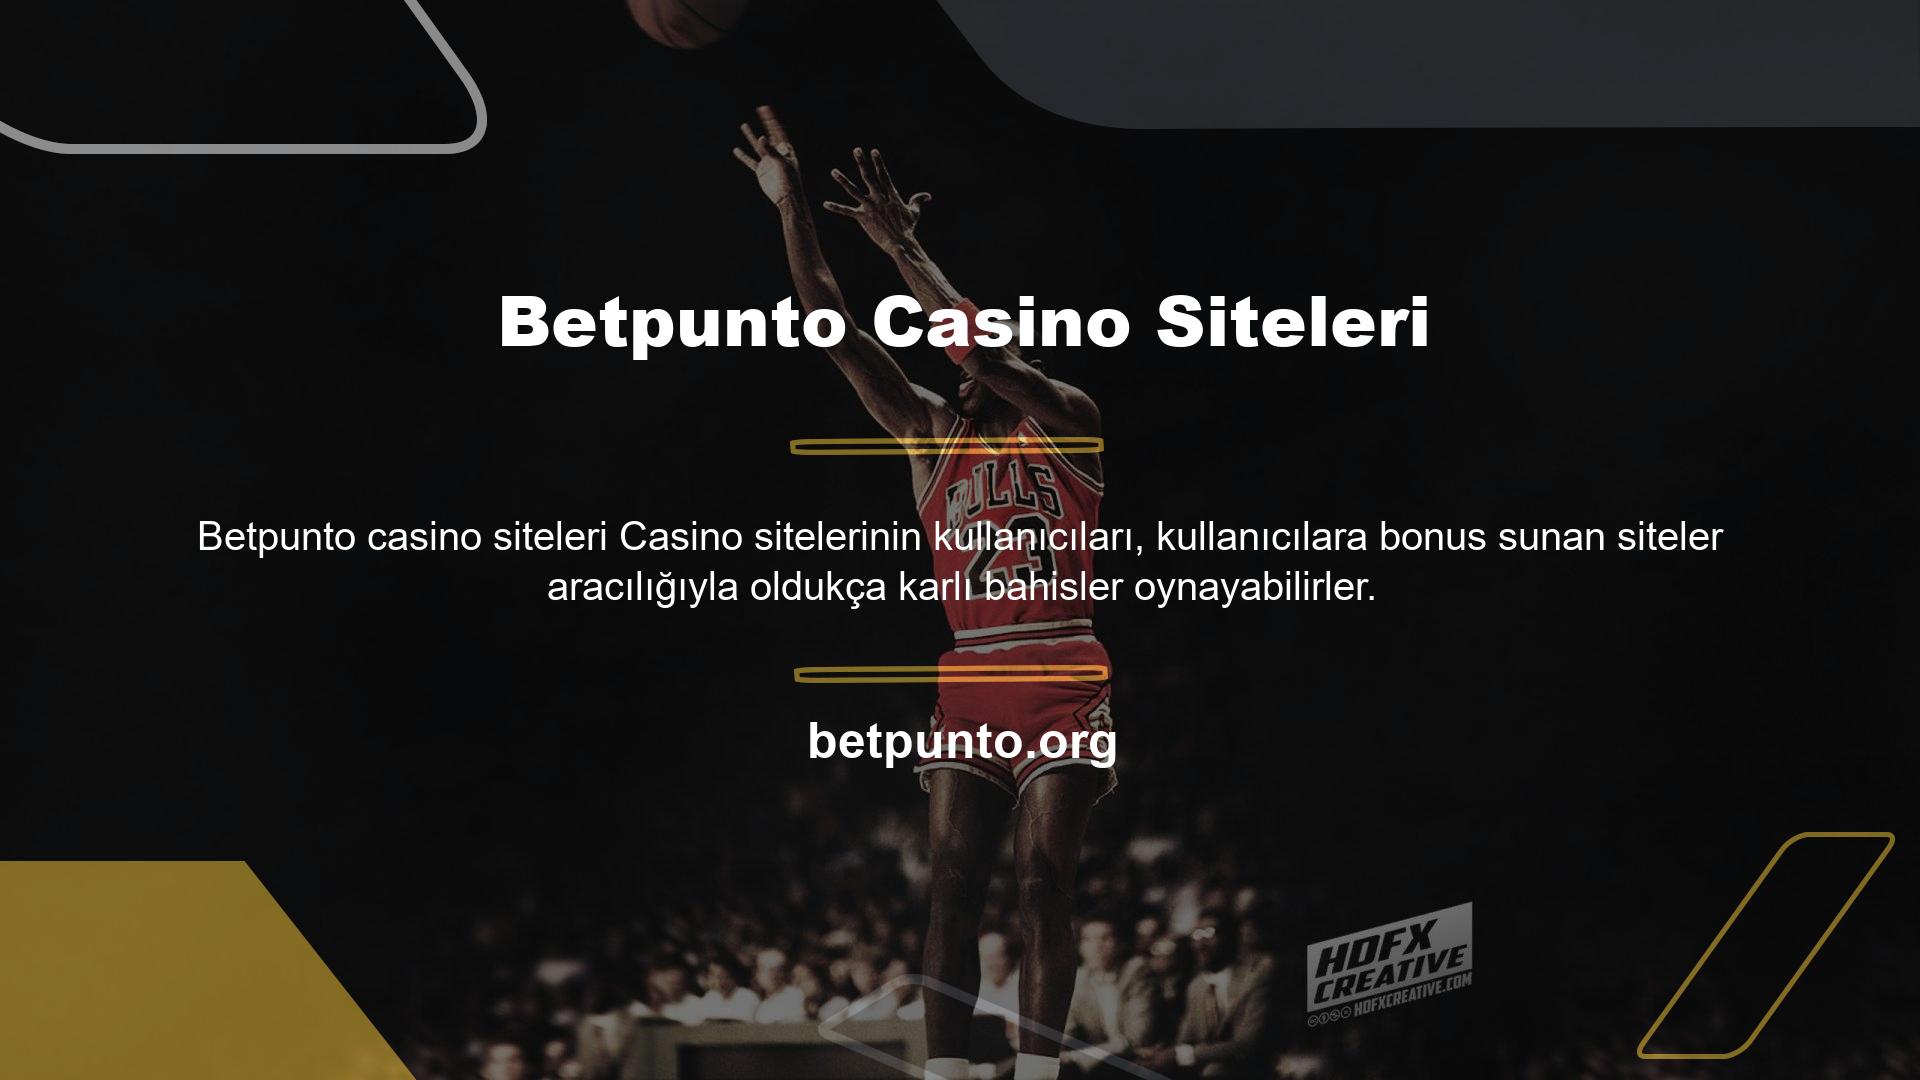 Çevrimiçi casino sitelerinin kullanıcılarına bonuslar sunun